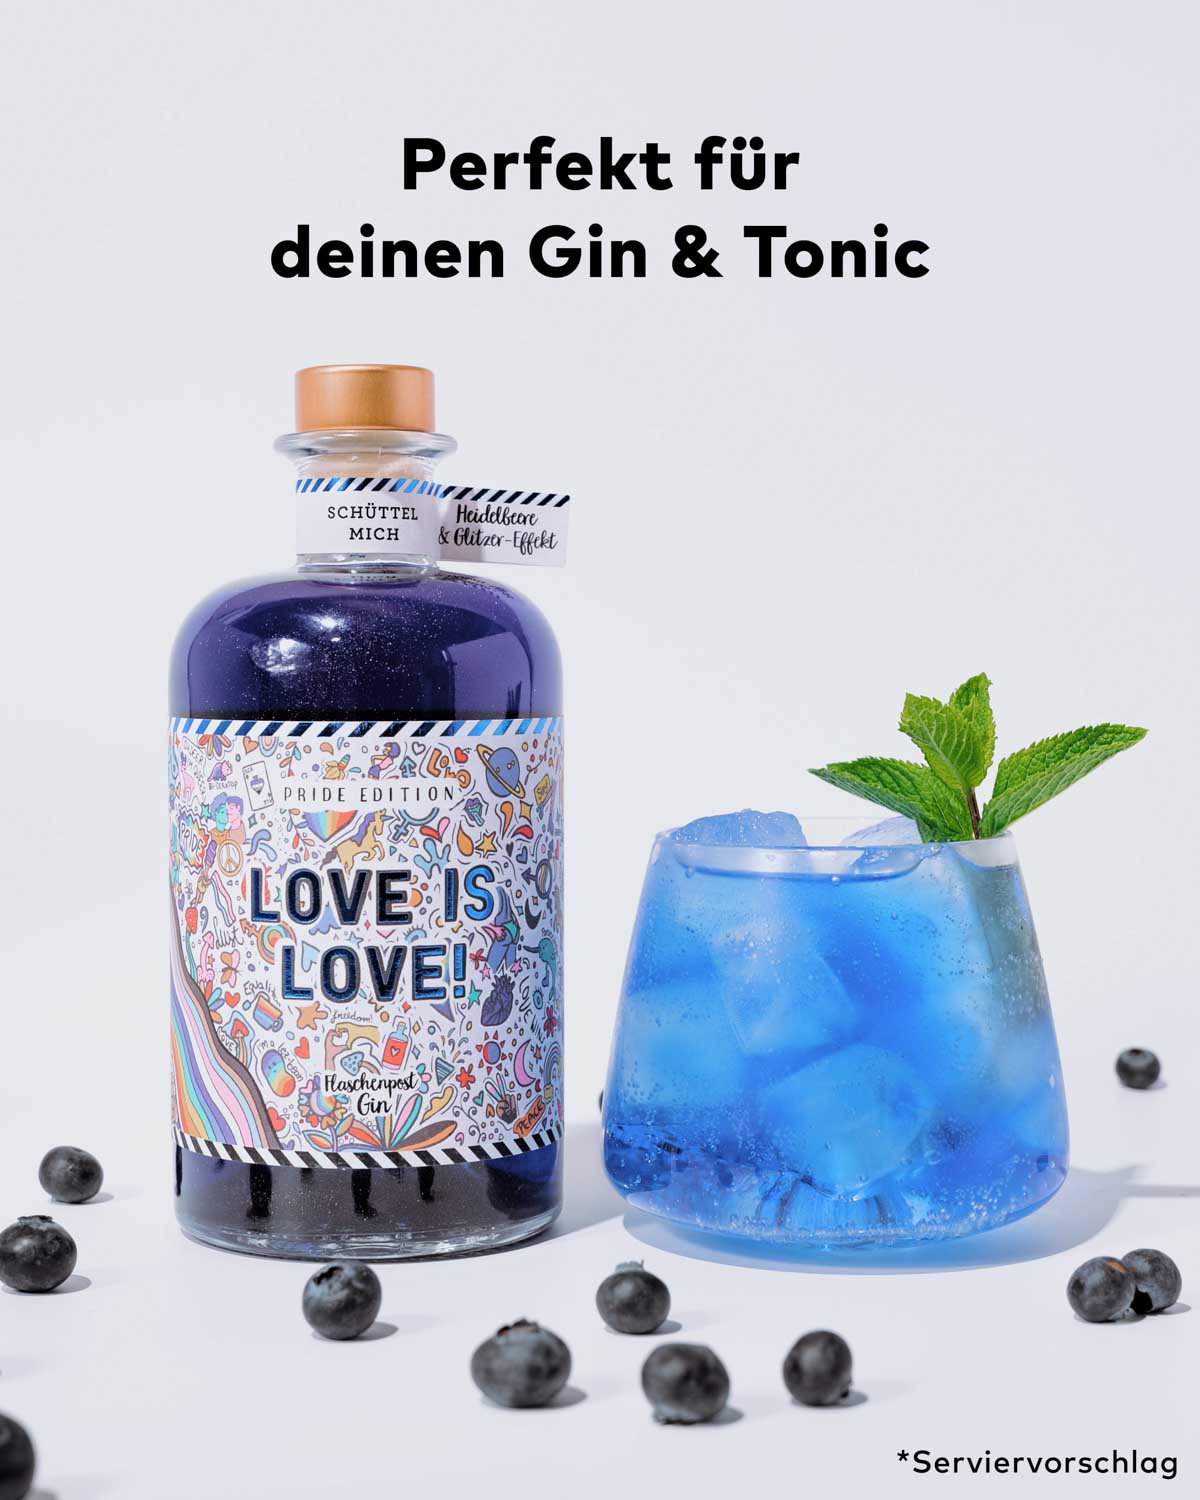 Unser besonderer Statement Gin trägt die Botschaft "Love is Love". Seine markante blaue Farbe und der fesselnde Glitzer-Effekt machen ihn zur perfekten Ergänzung für deinen Gin & Tonic.